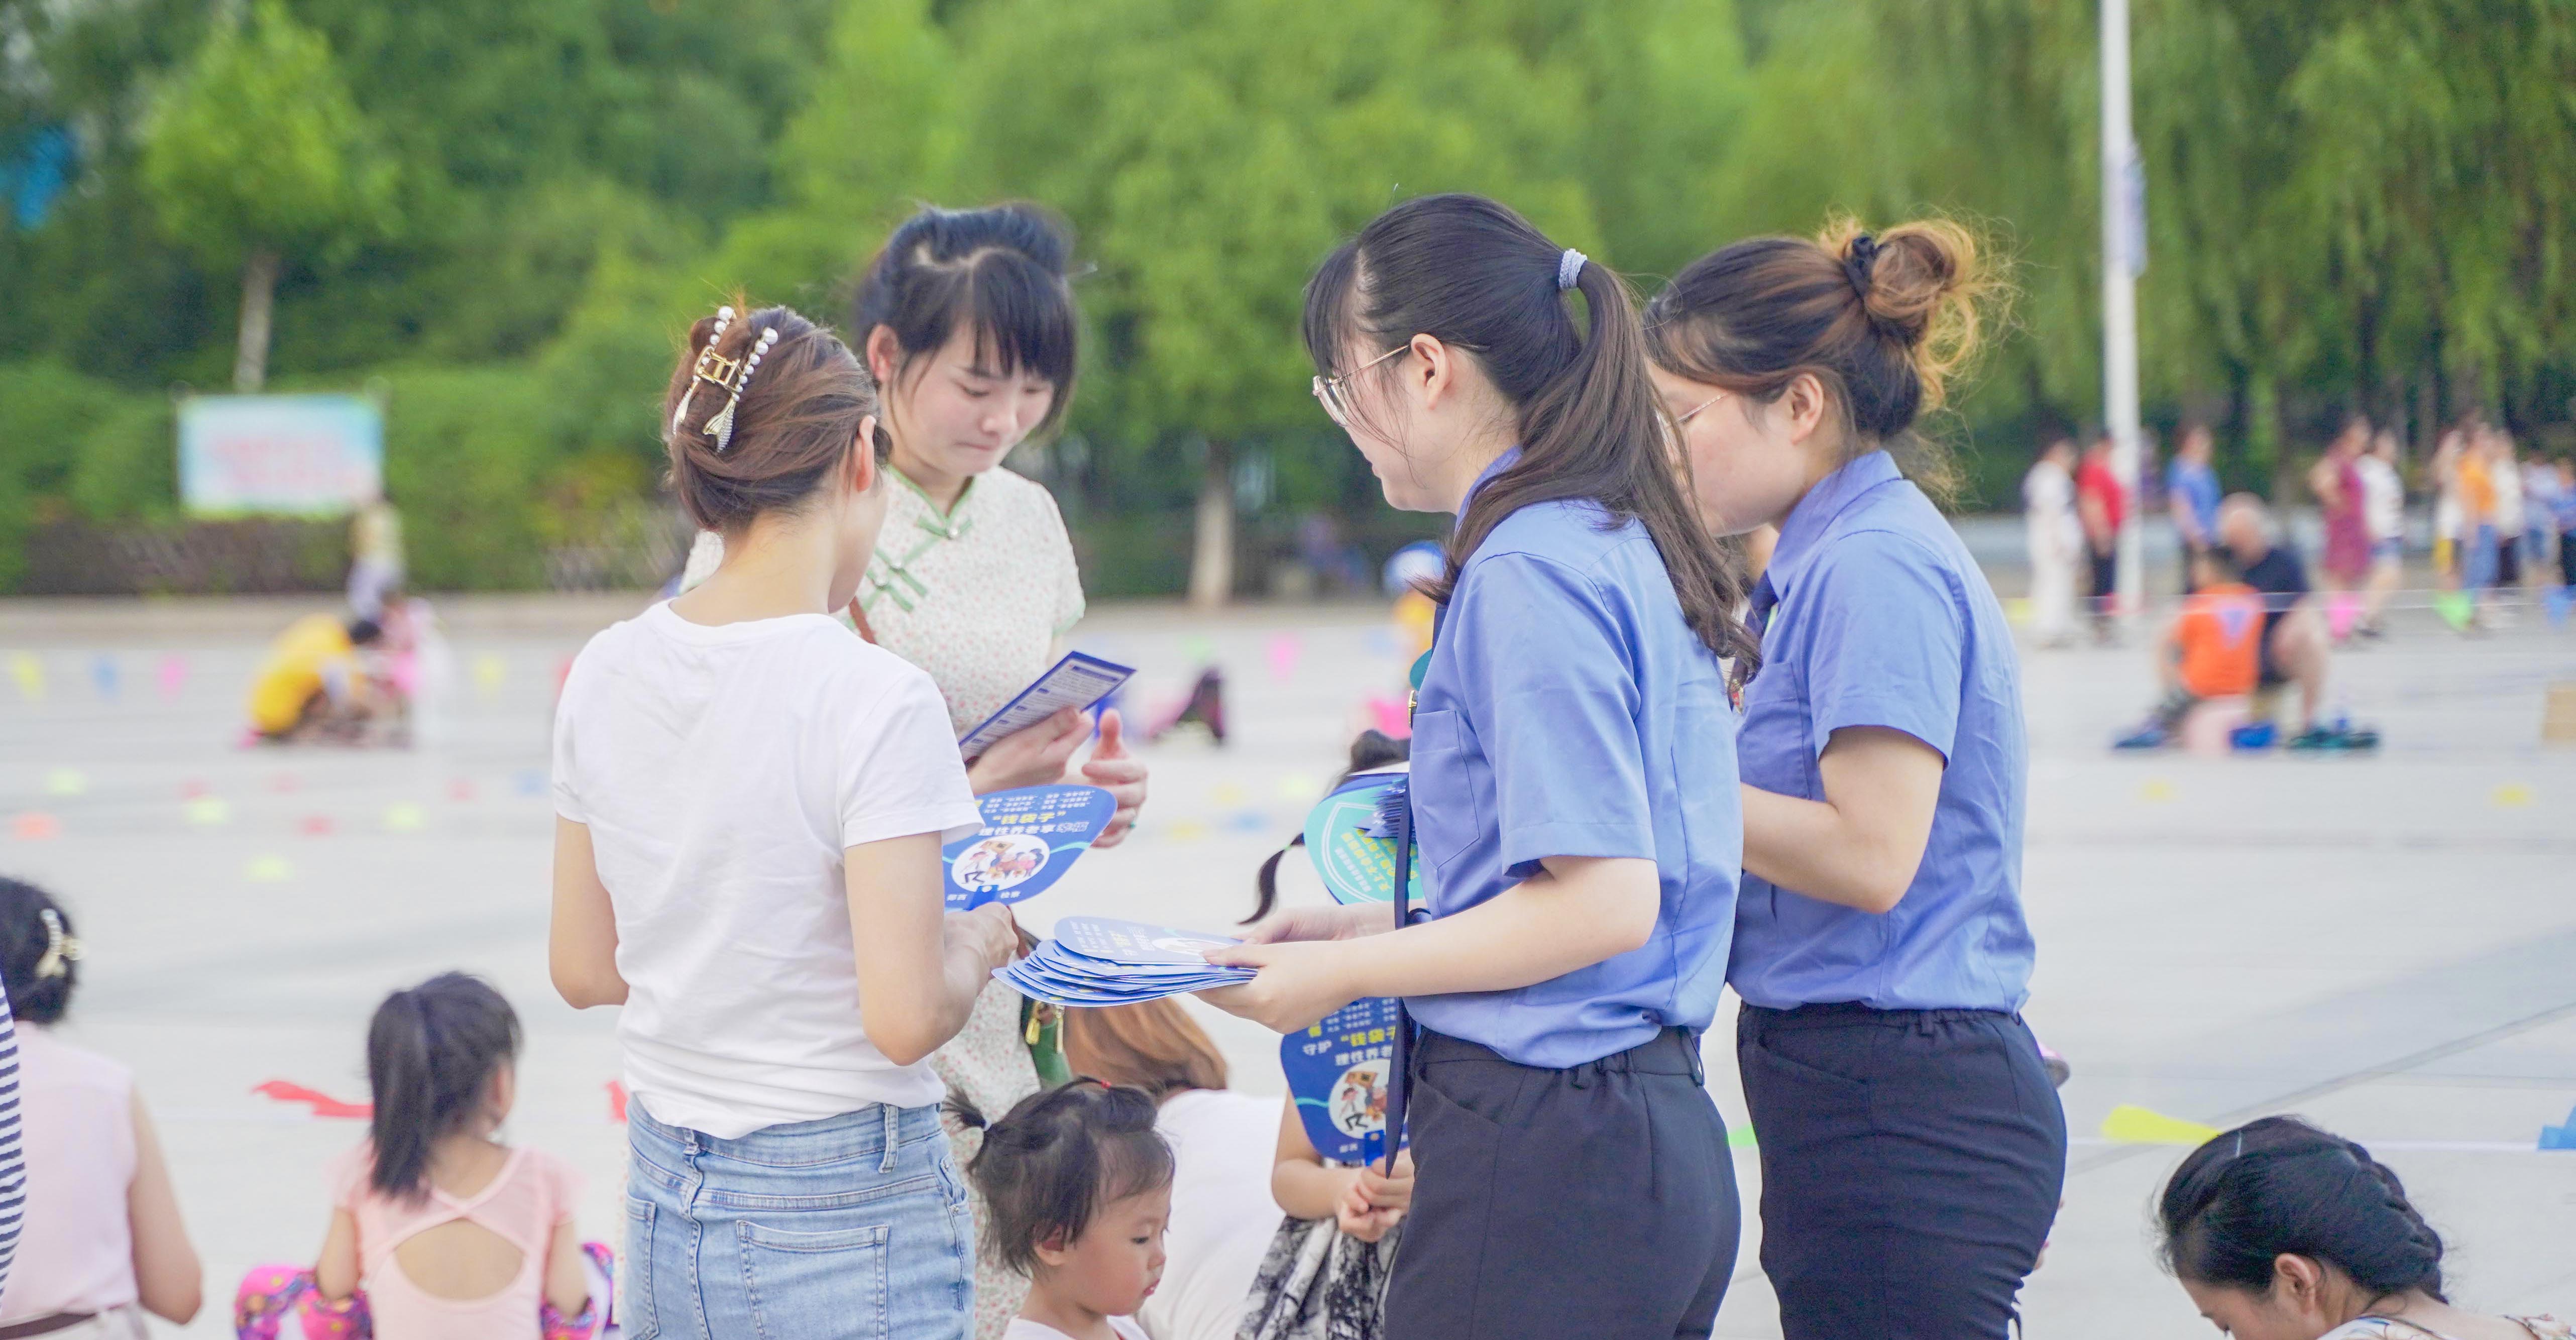 郧西县检察院开展未成年人保护法治宣传活动